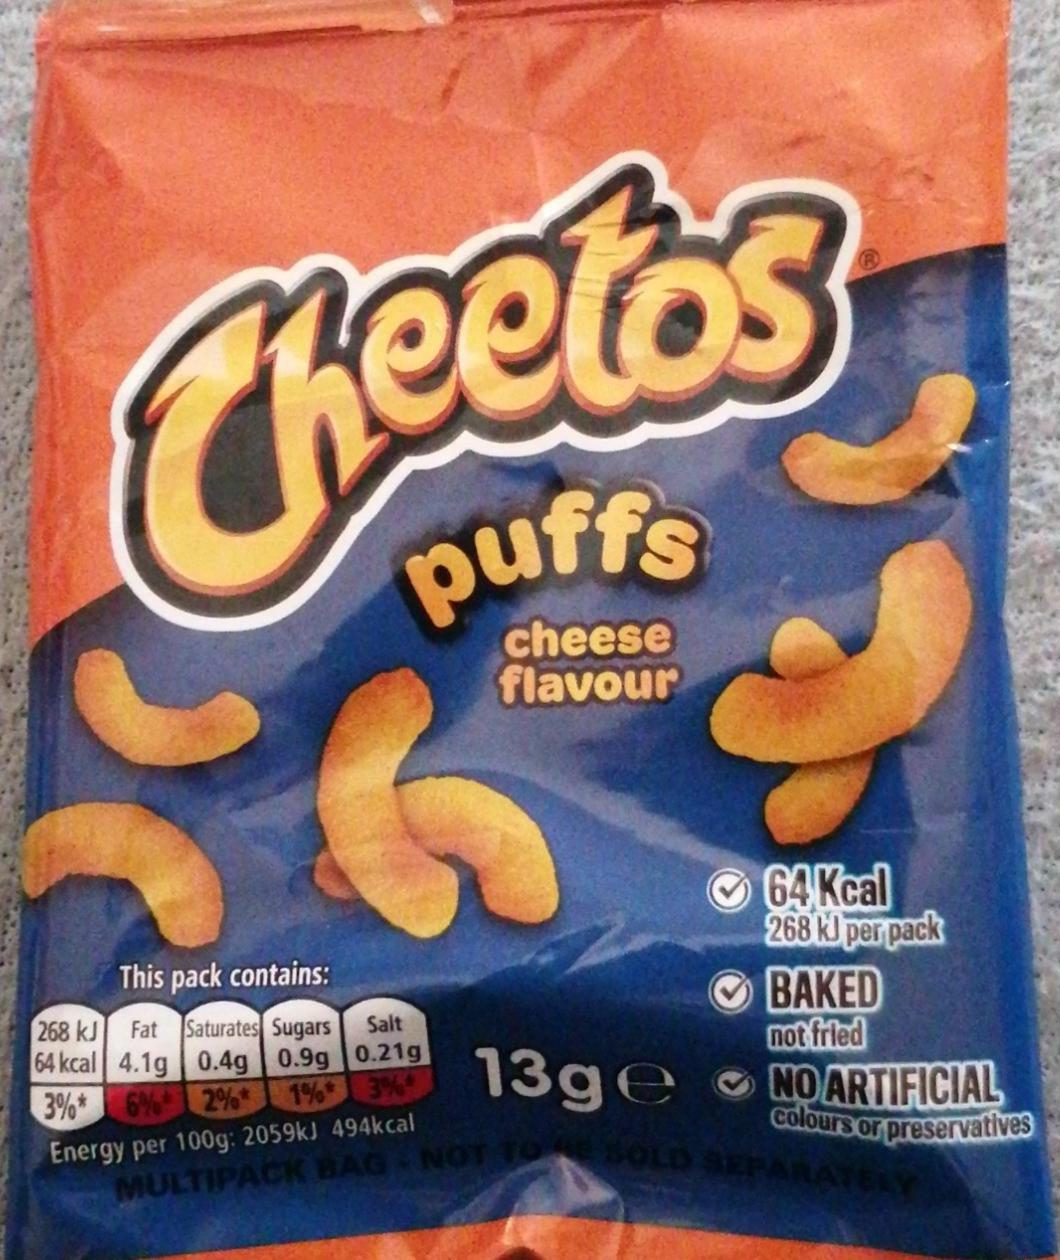 Fotografie - Cheetos puffs cheese flavour